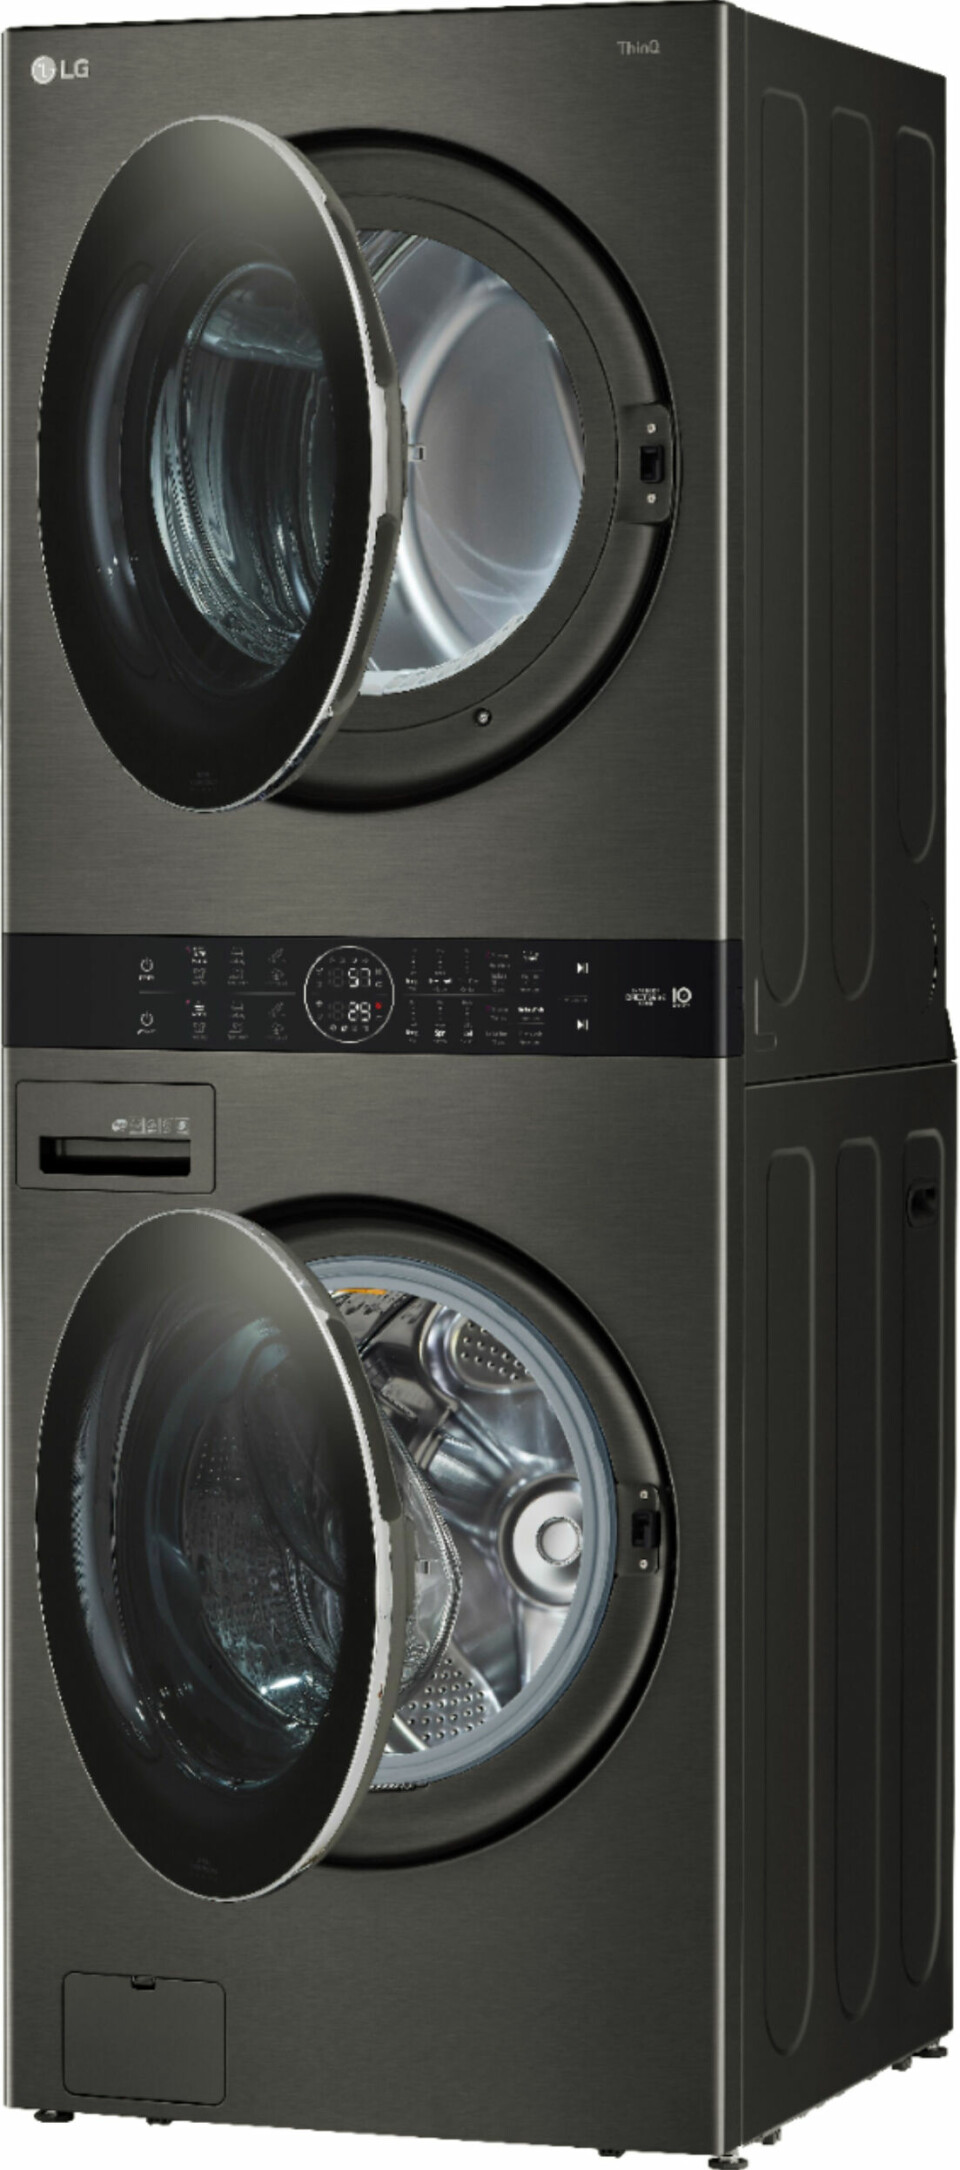 Vasketårnet LG WT1210BBF er vaskemaskin og tørketrommel i ett,
med felles kontrollpanel i midten. Pris: 35.000,-